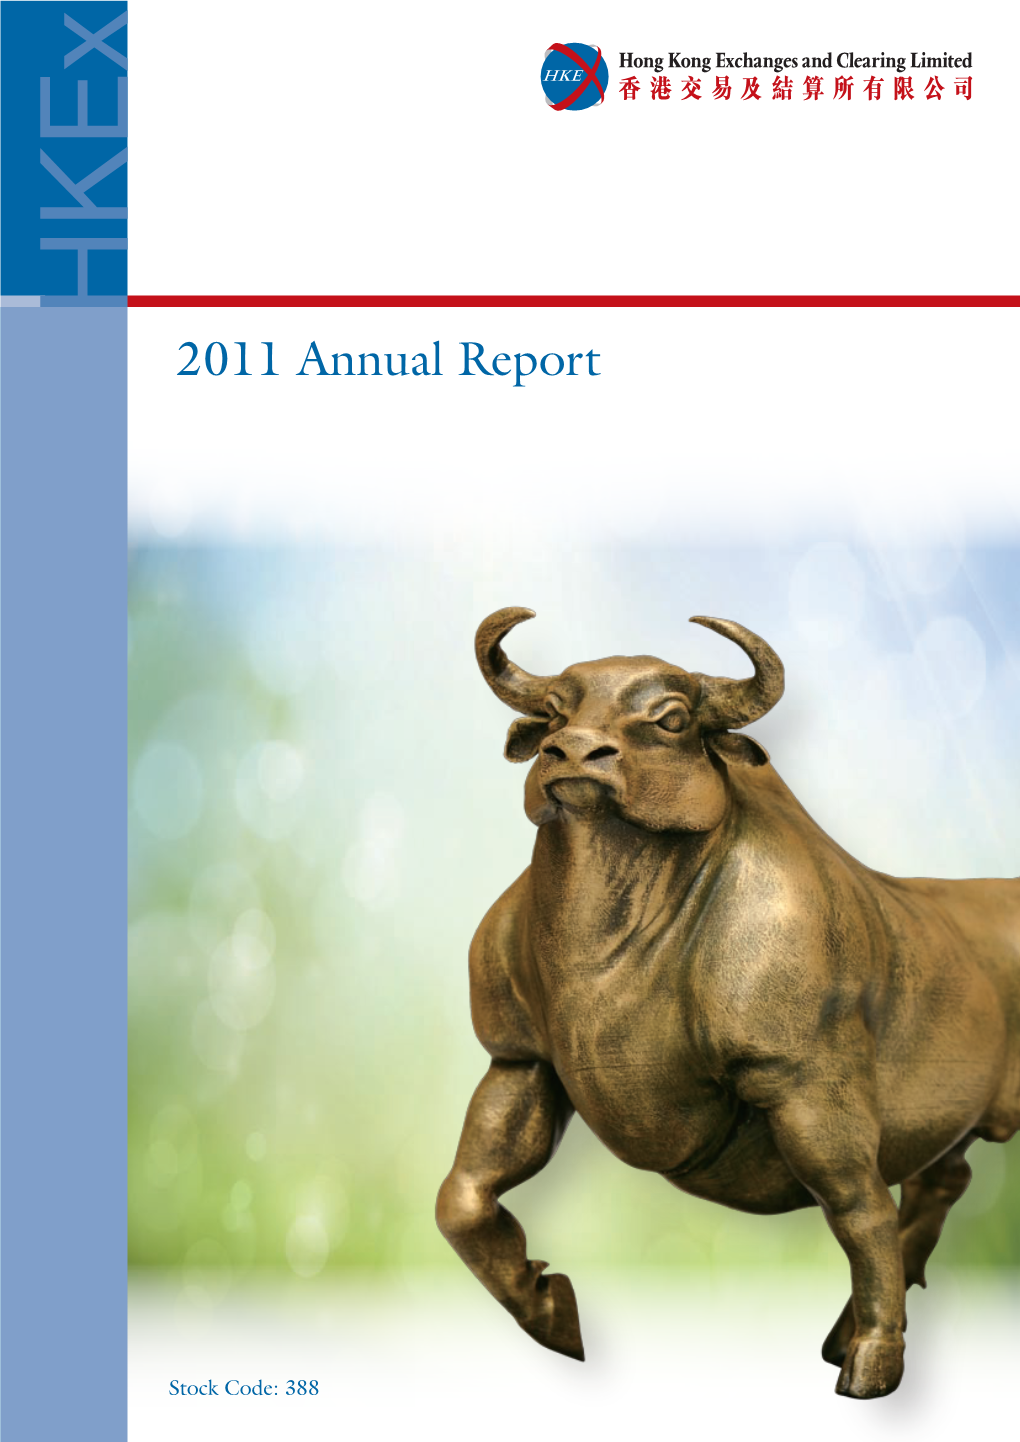 2011 Annual Report2011 Annual Stock Code: 388